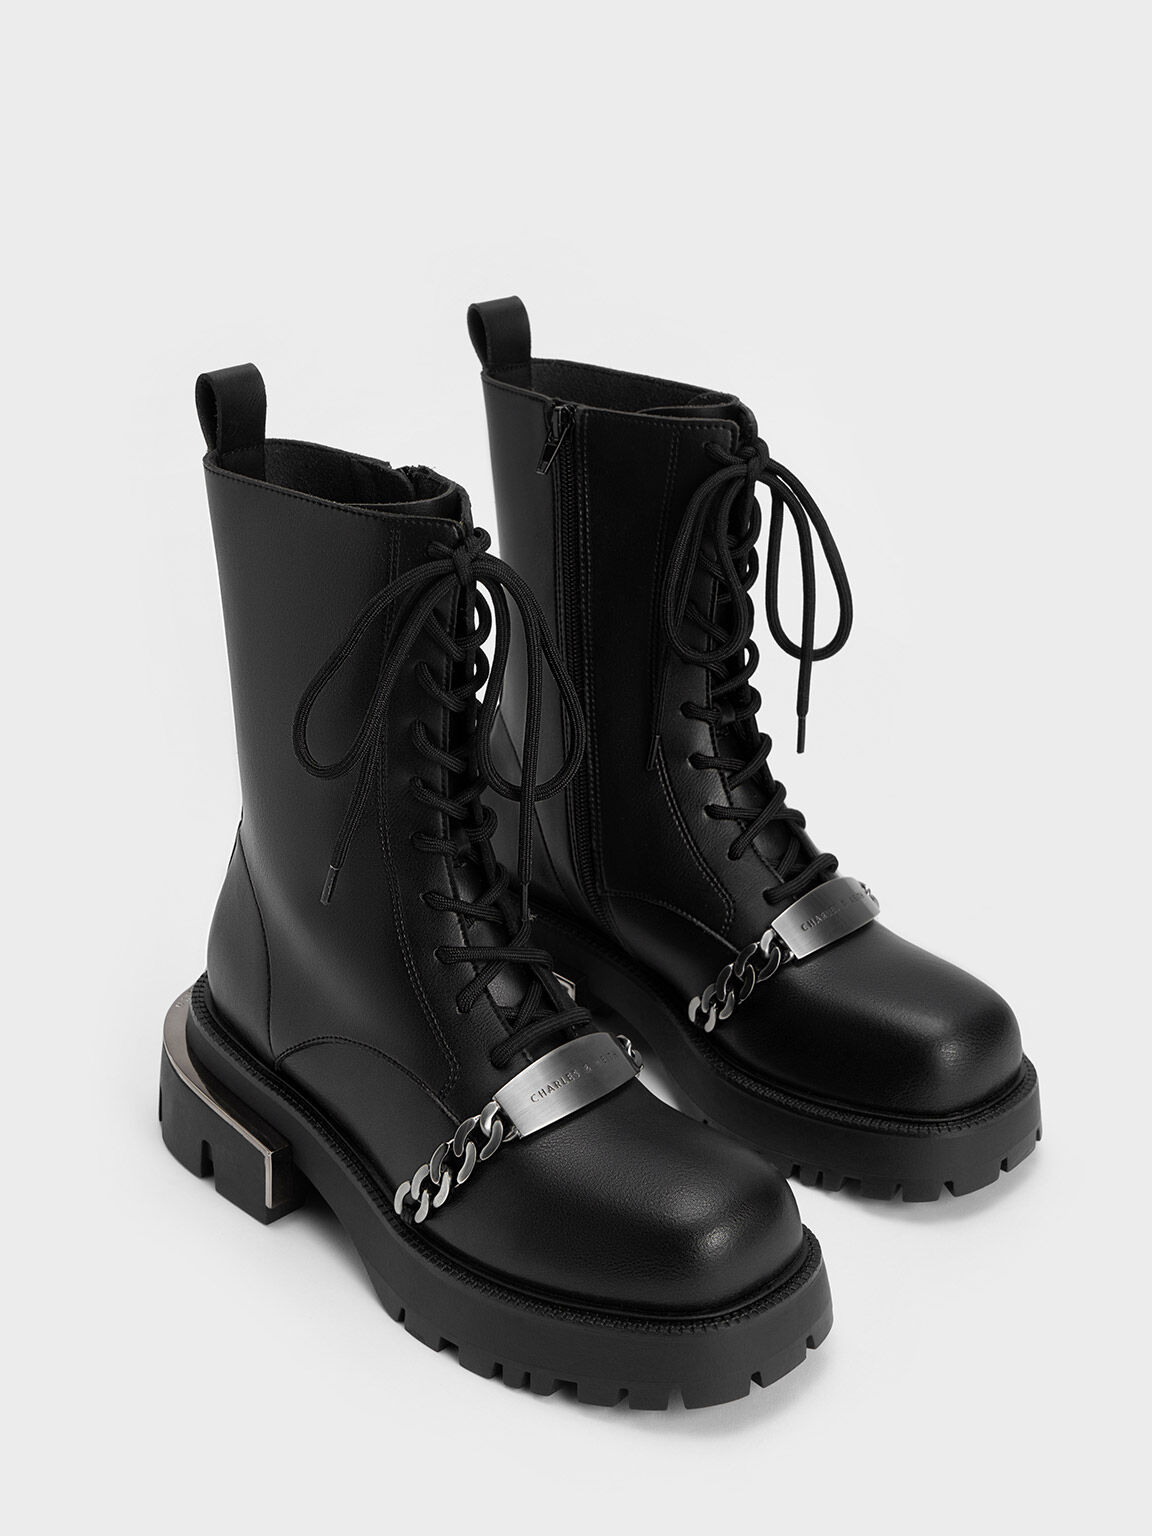 Selma Metallic Accent Lace-Up Boots, Black, hi-res